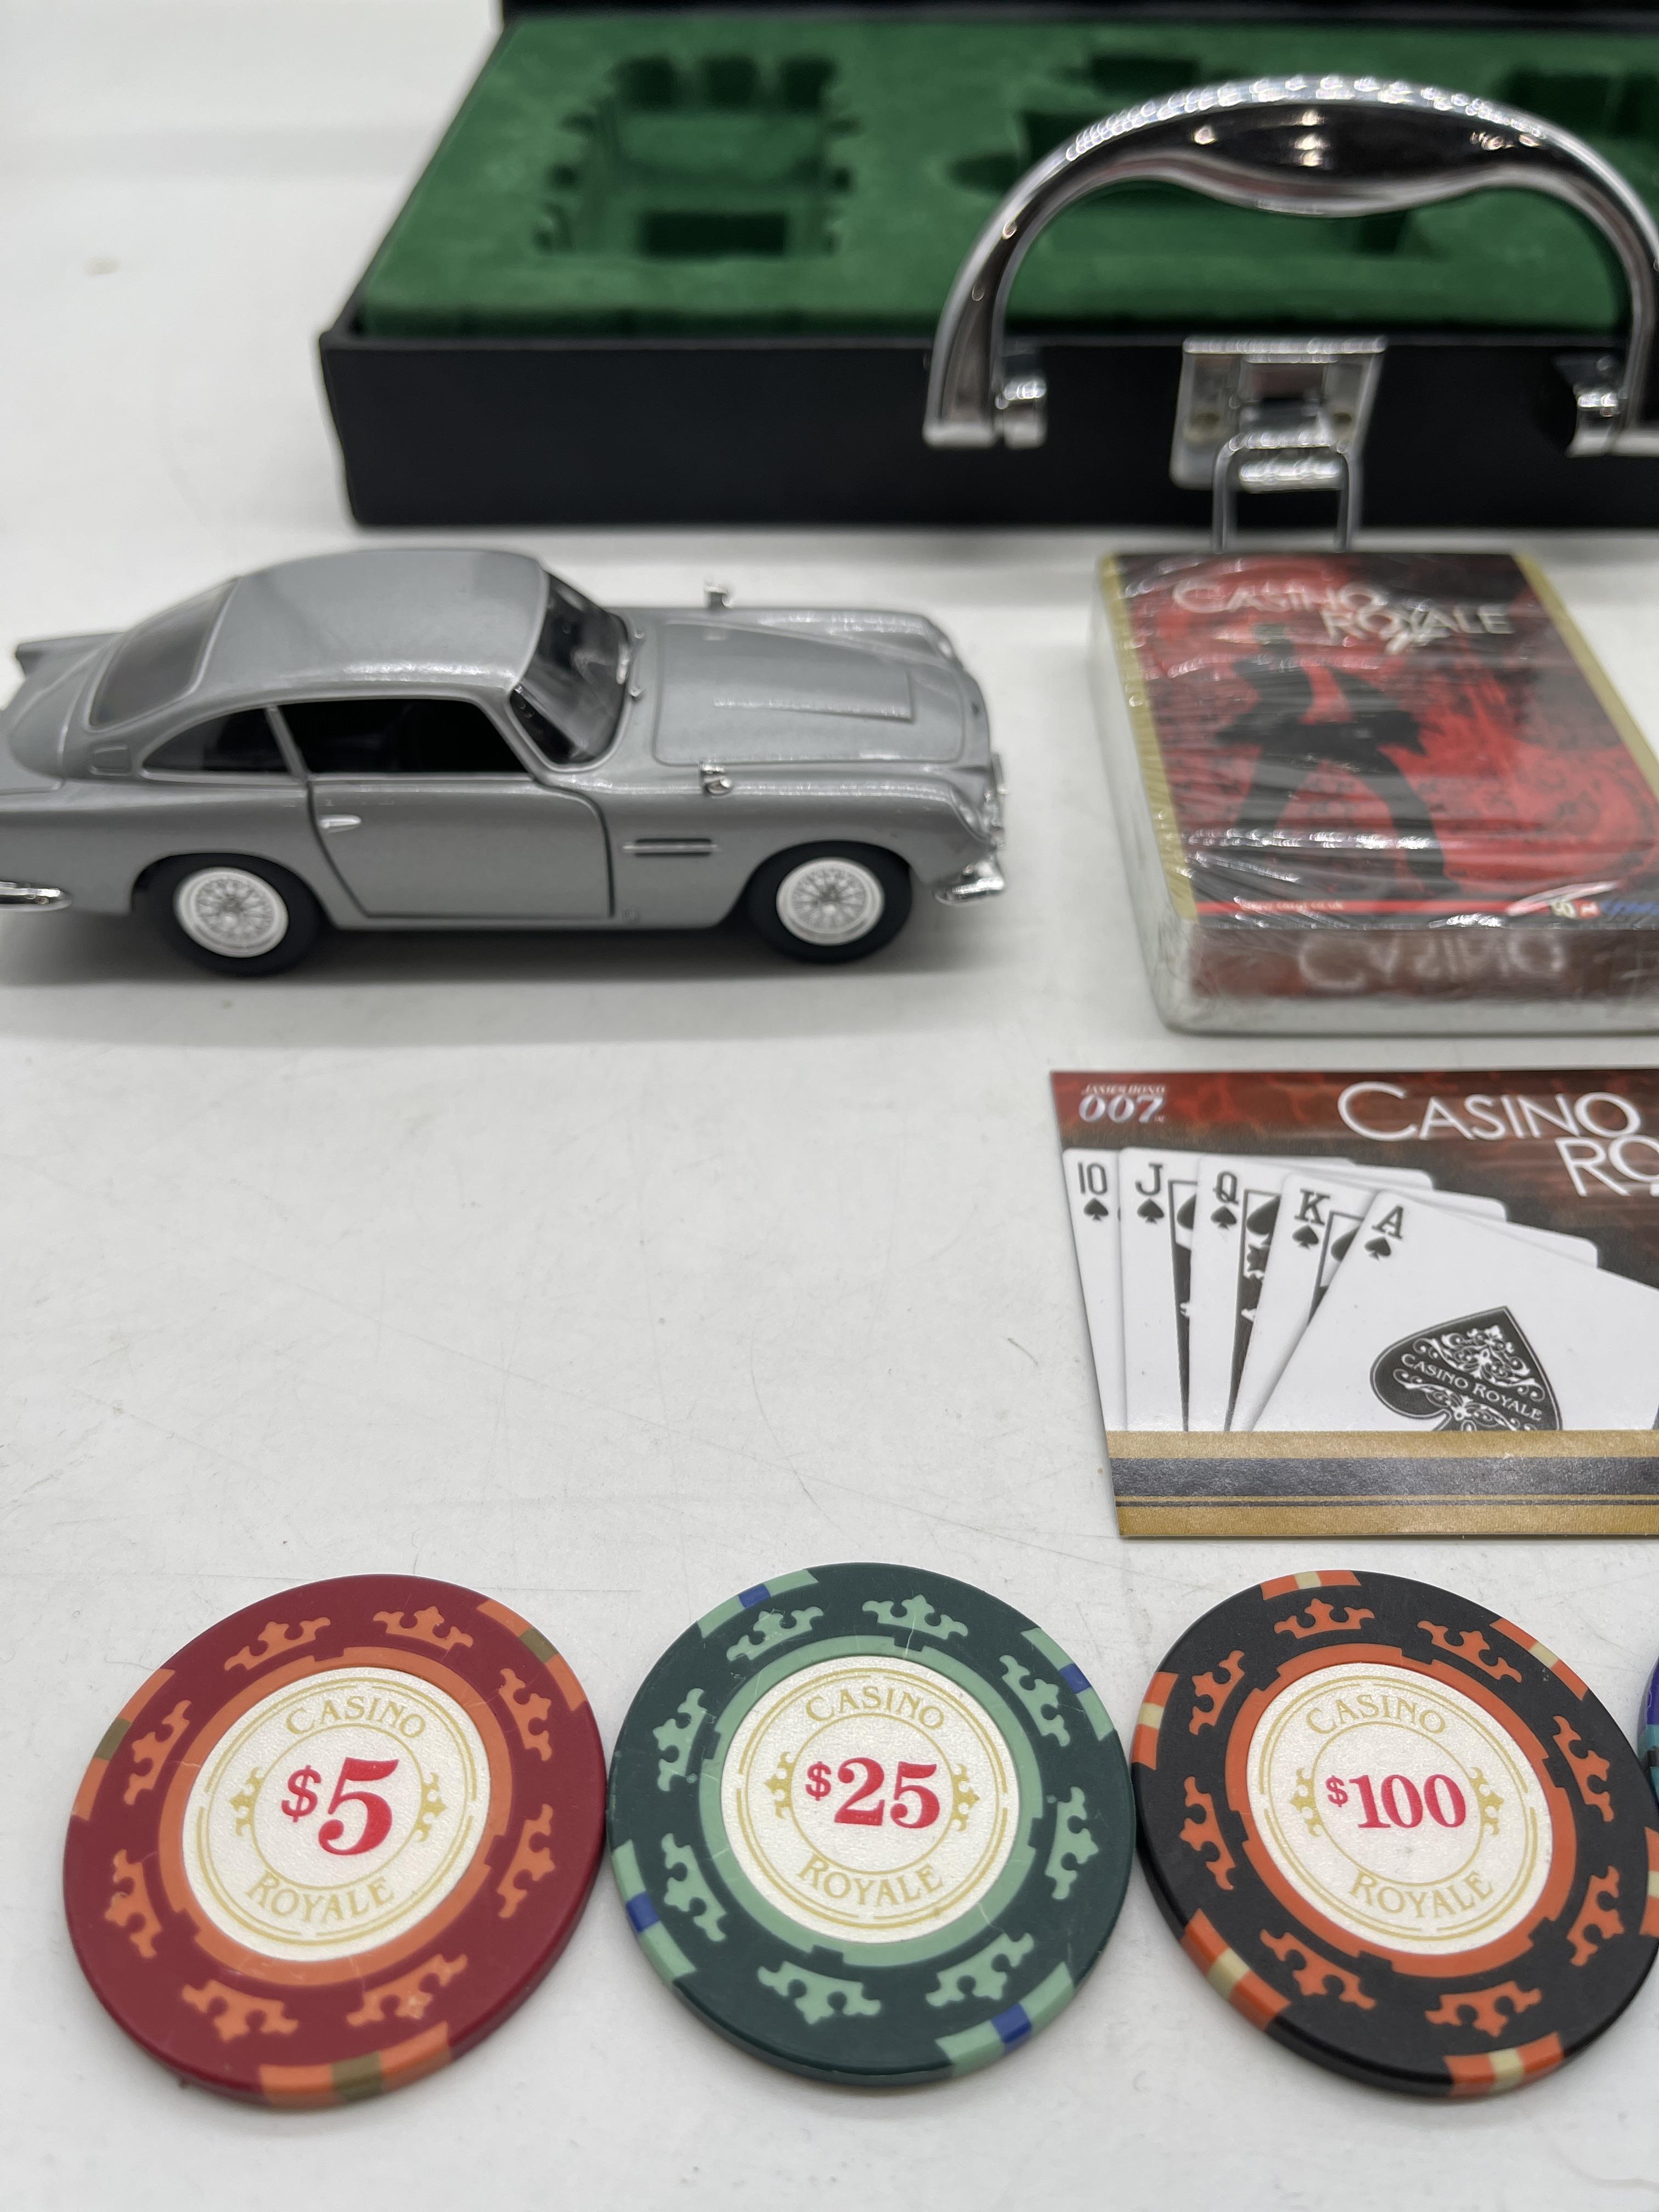 007 Casino Royal Corgi Box Kit - Image 15 of 20